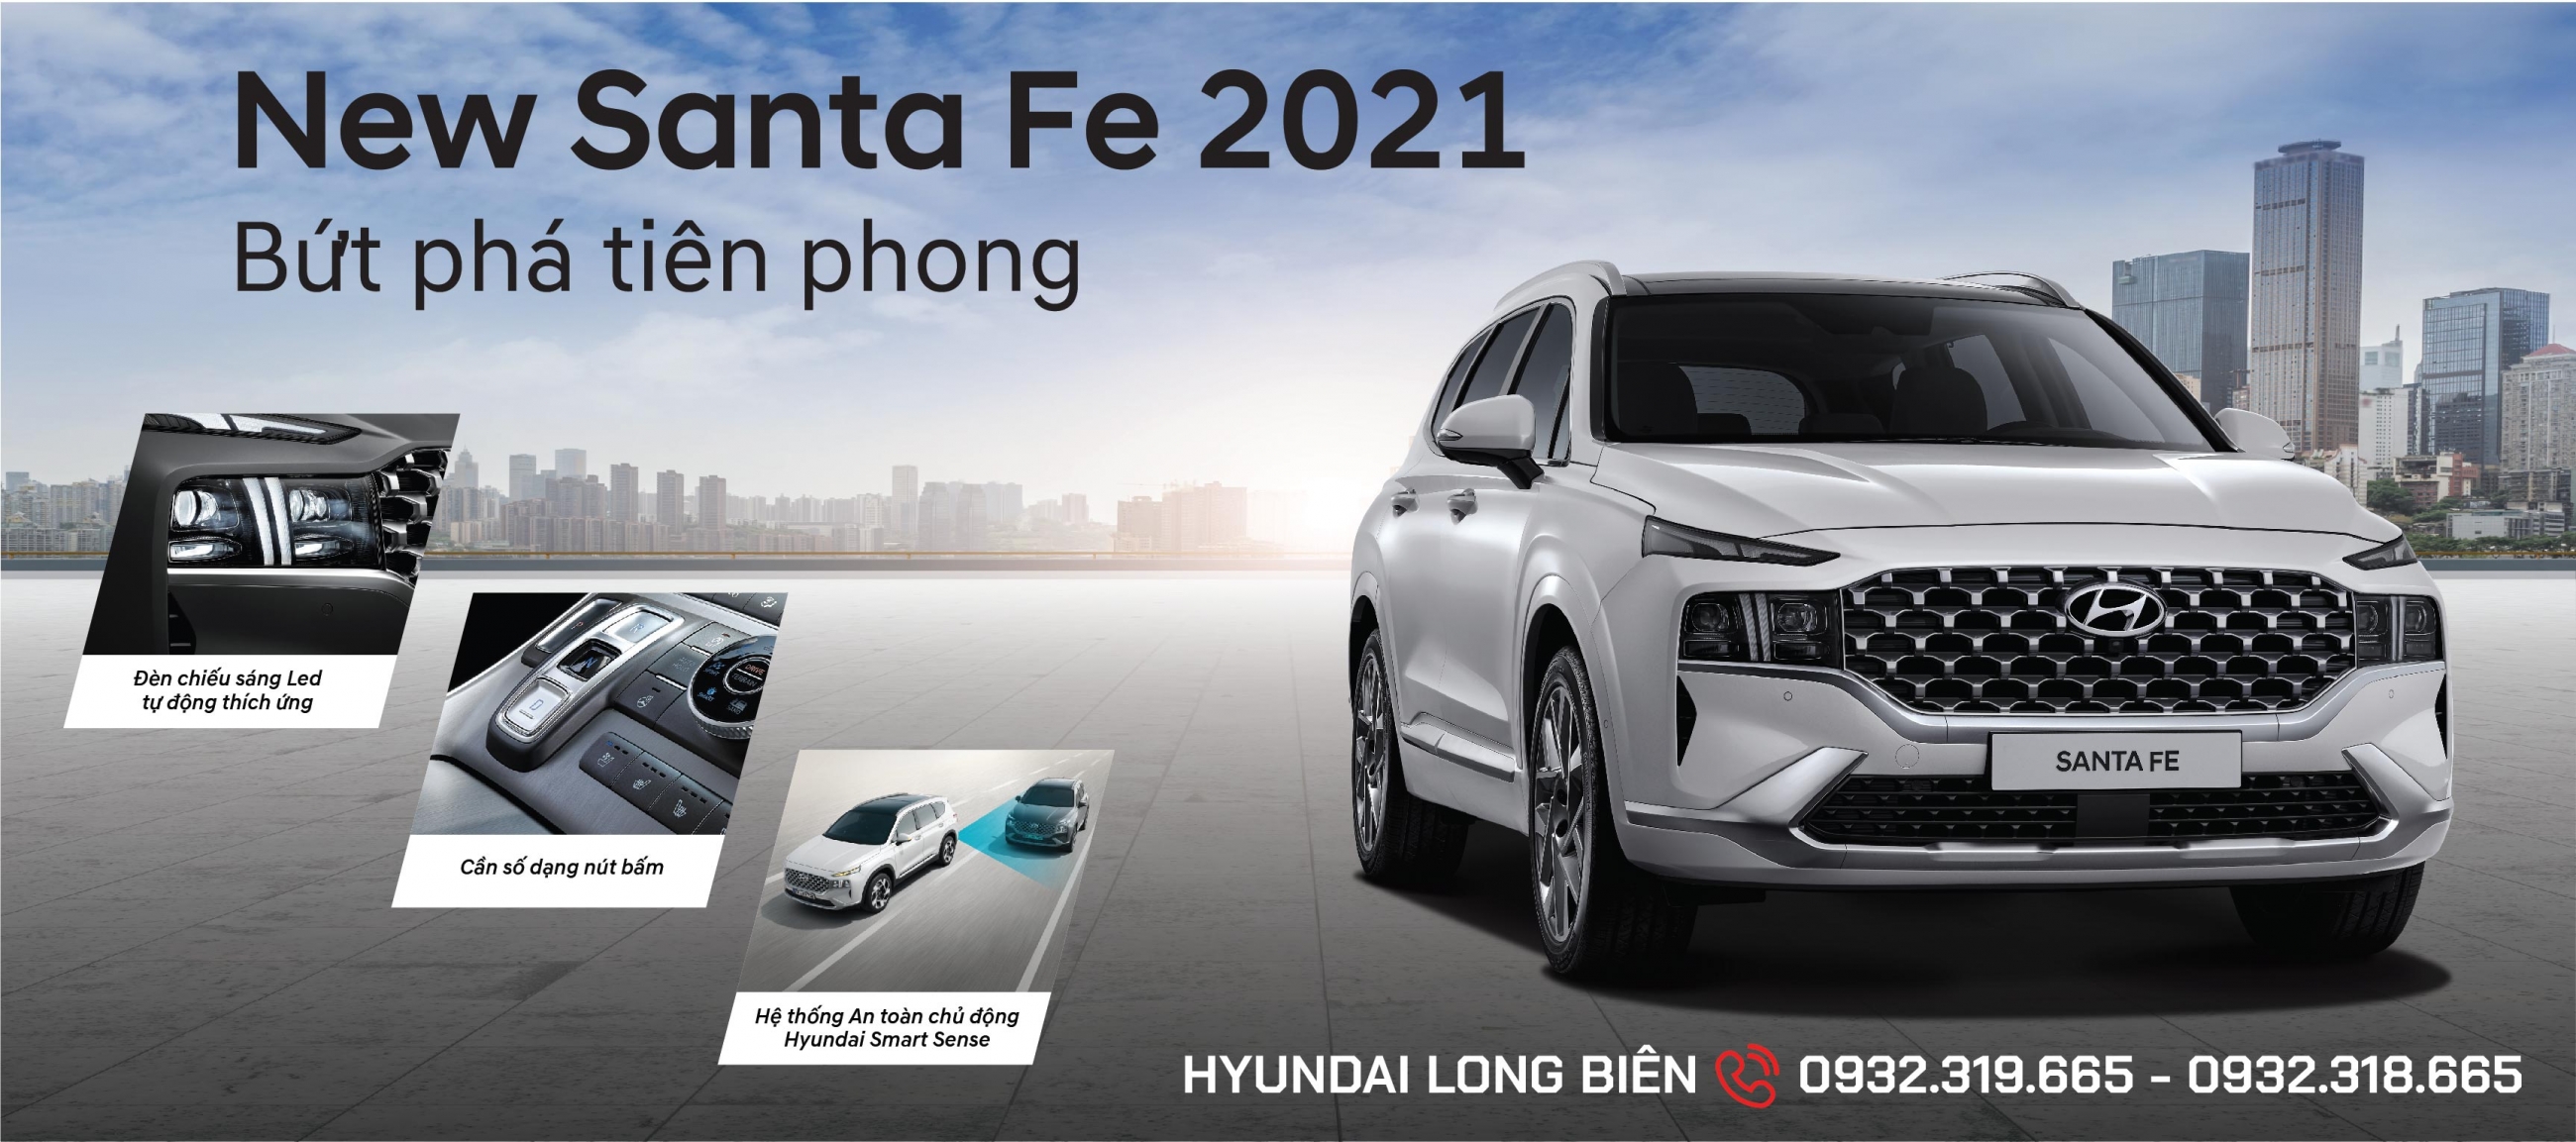 Hyundai SantaFe 2021 tung ra thị trường Việt Nam tháng 6 tới